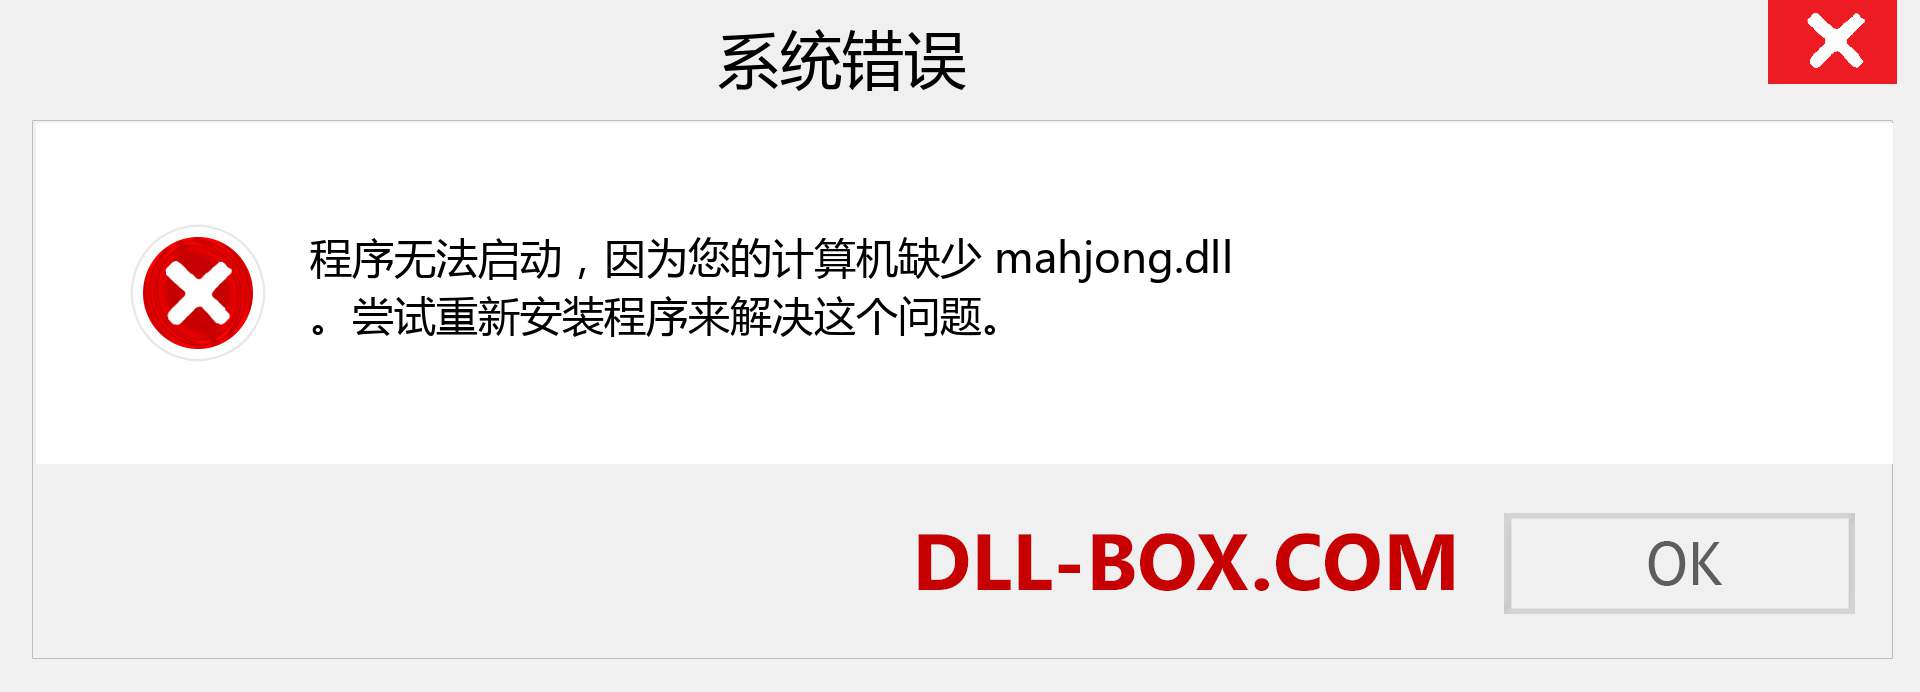 mahjong.dll 文件丢失？。 适用于 Windows 7、8、10 的下载 - 修复 Windows、照片、图像上的 mahjong dll 丢失错误